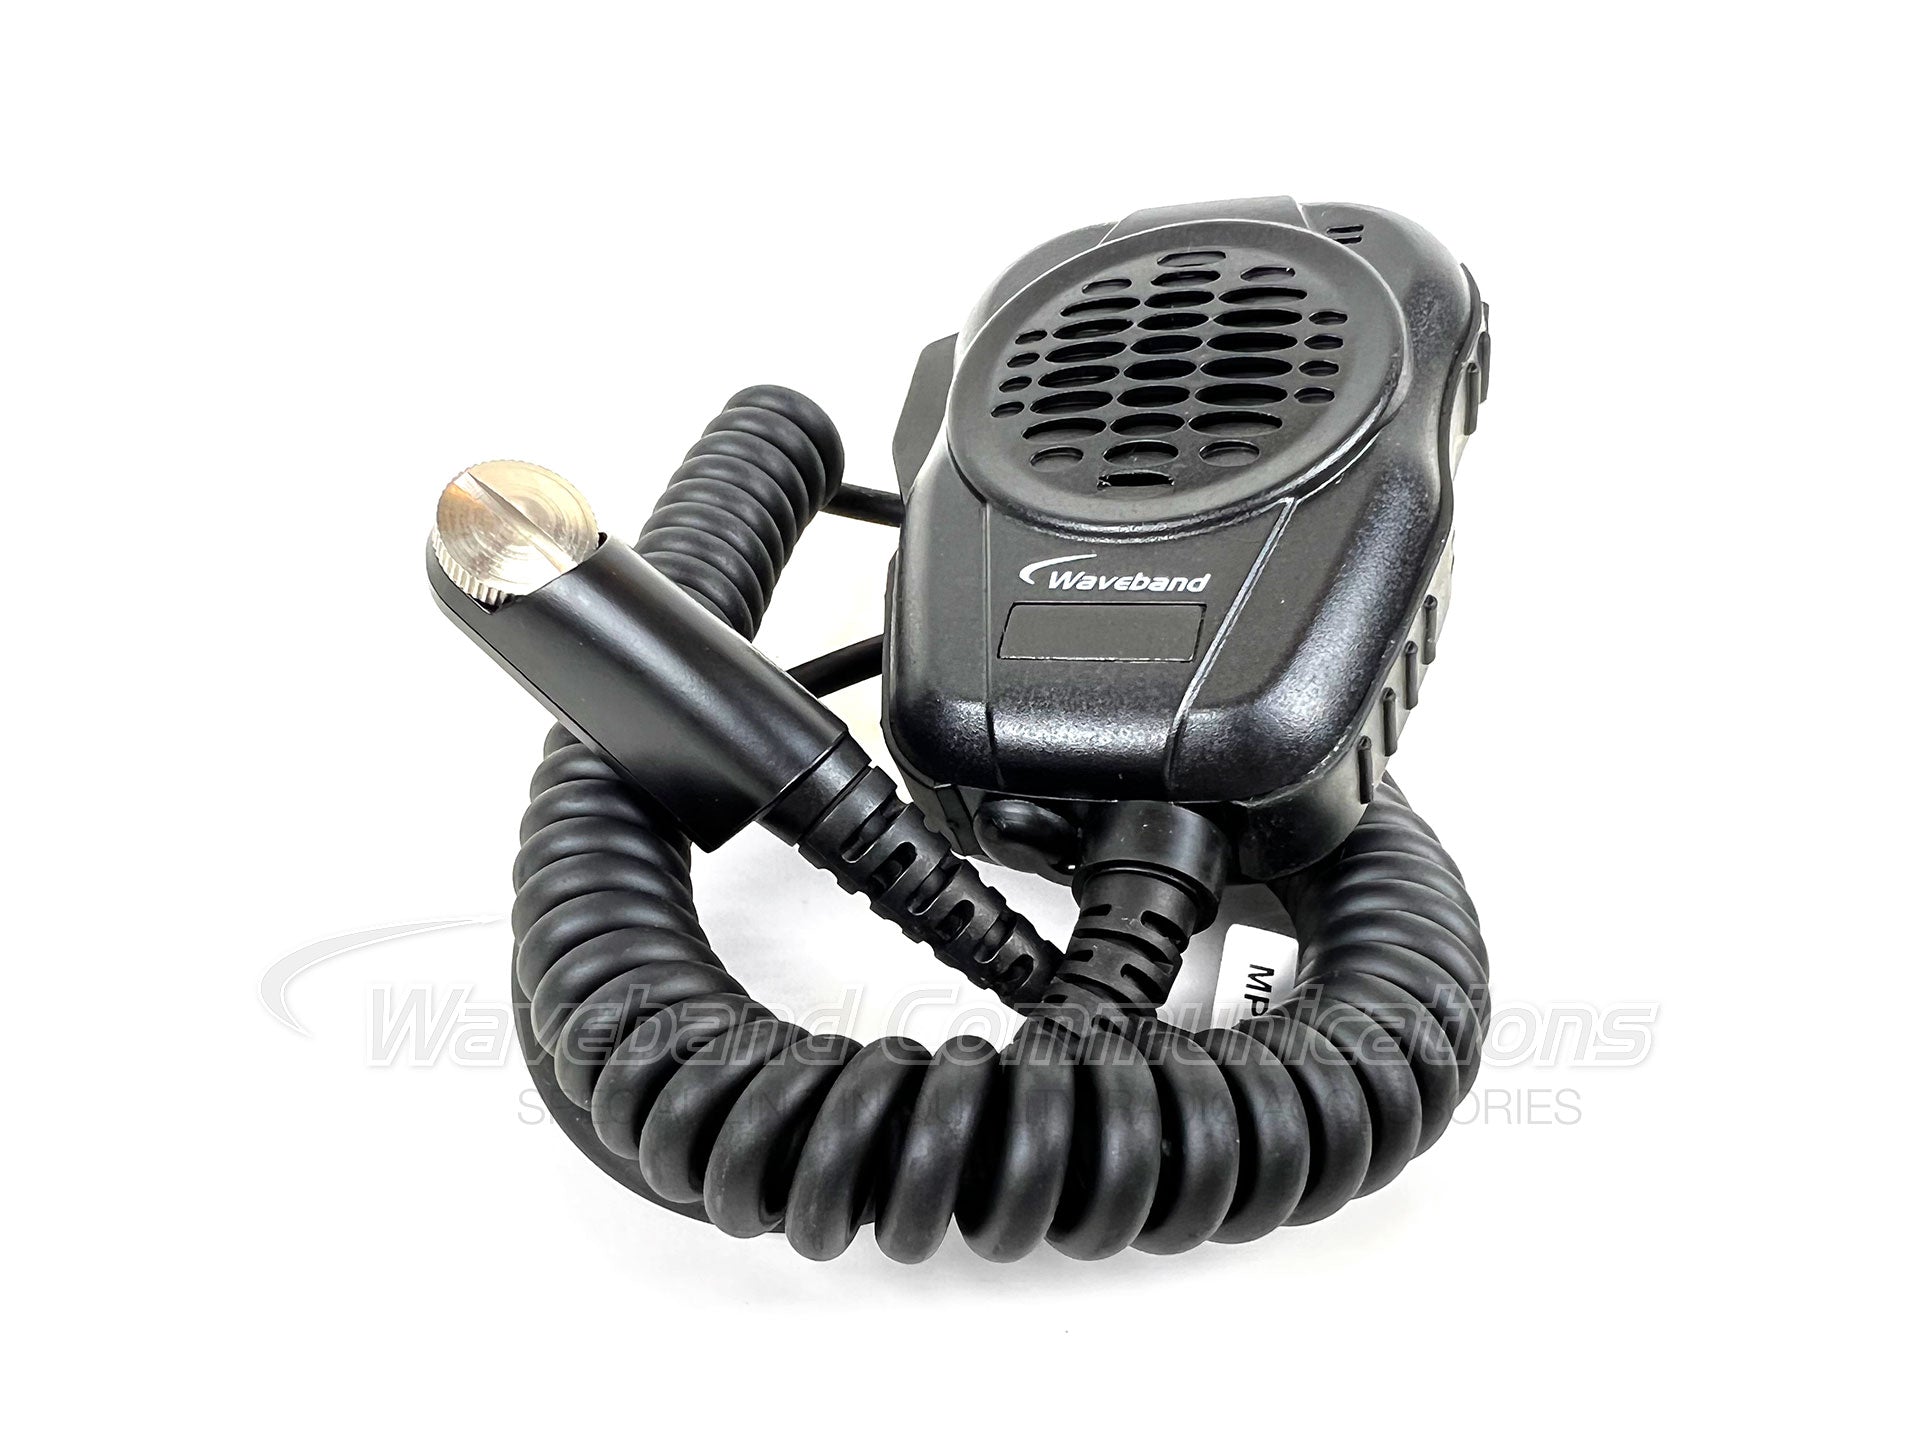 BANDEBAND WX-8004-E5 Série Resistente Microfone de Segurança Pública para Harris MA / COM XG-100 P WB # WX-8004-E5